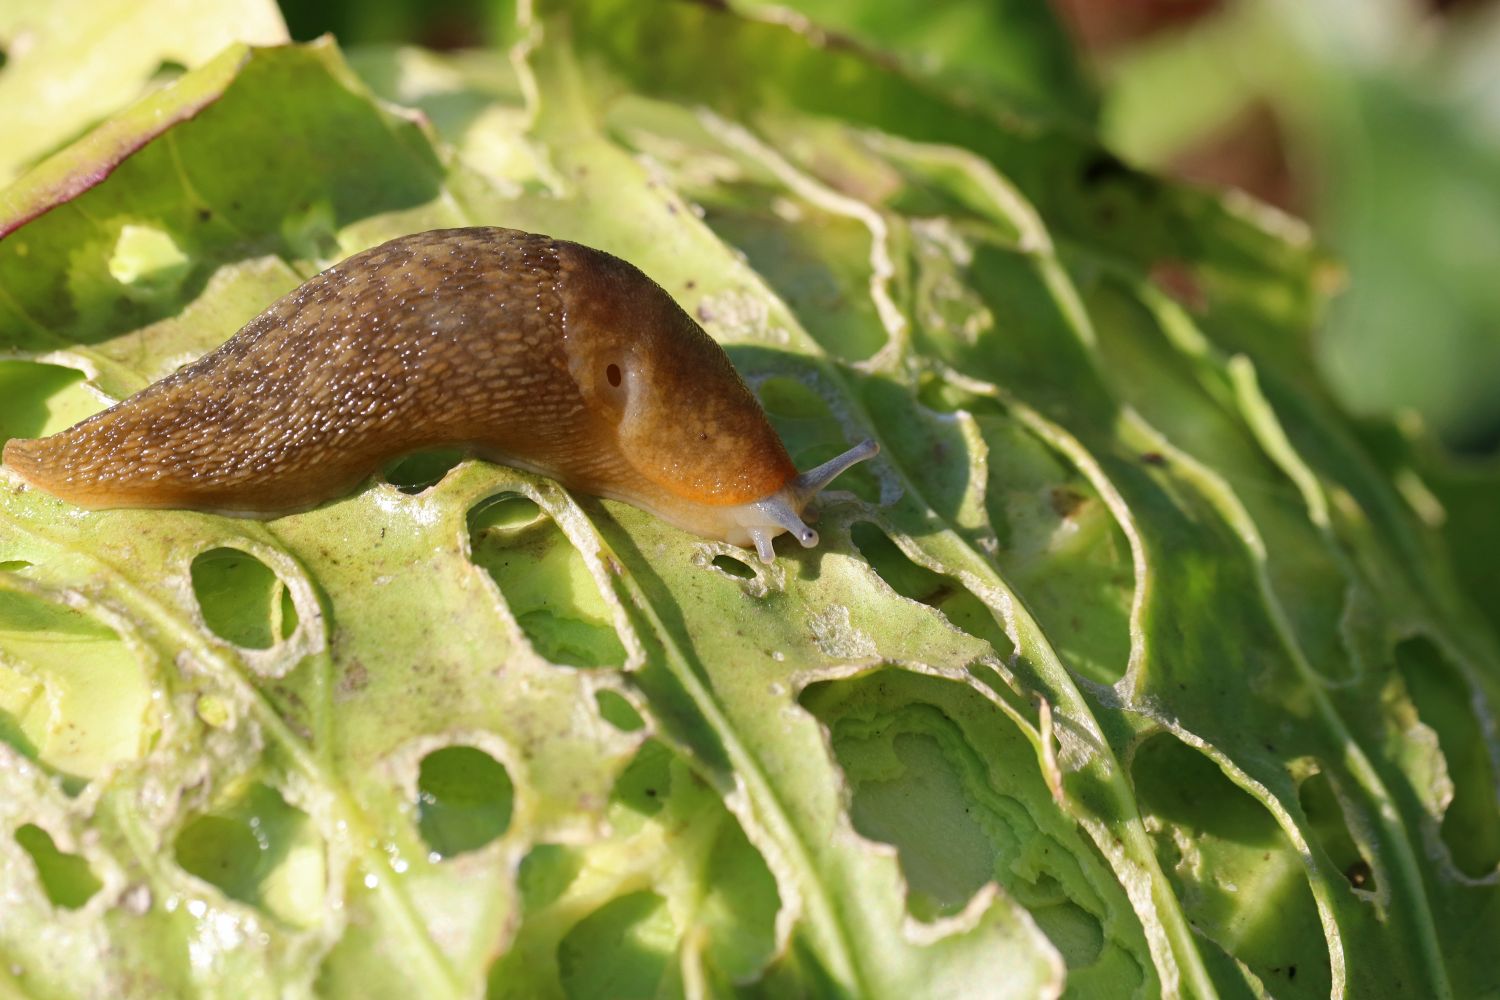 Slug eating a green leaf